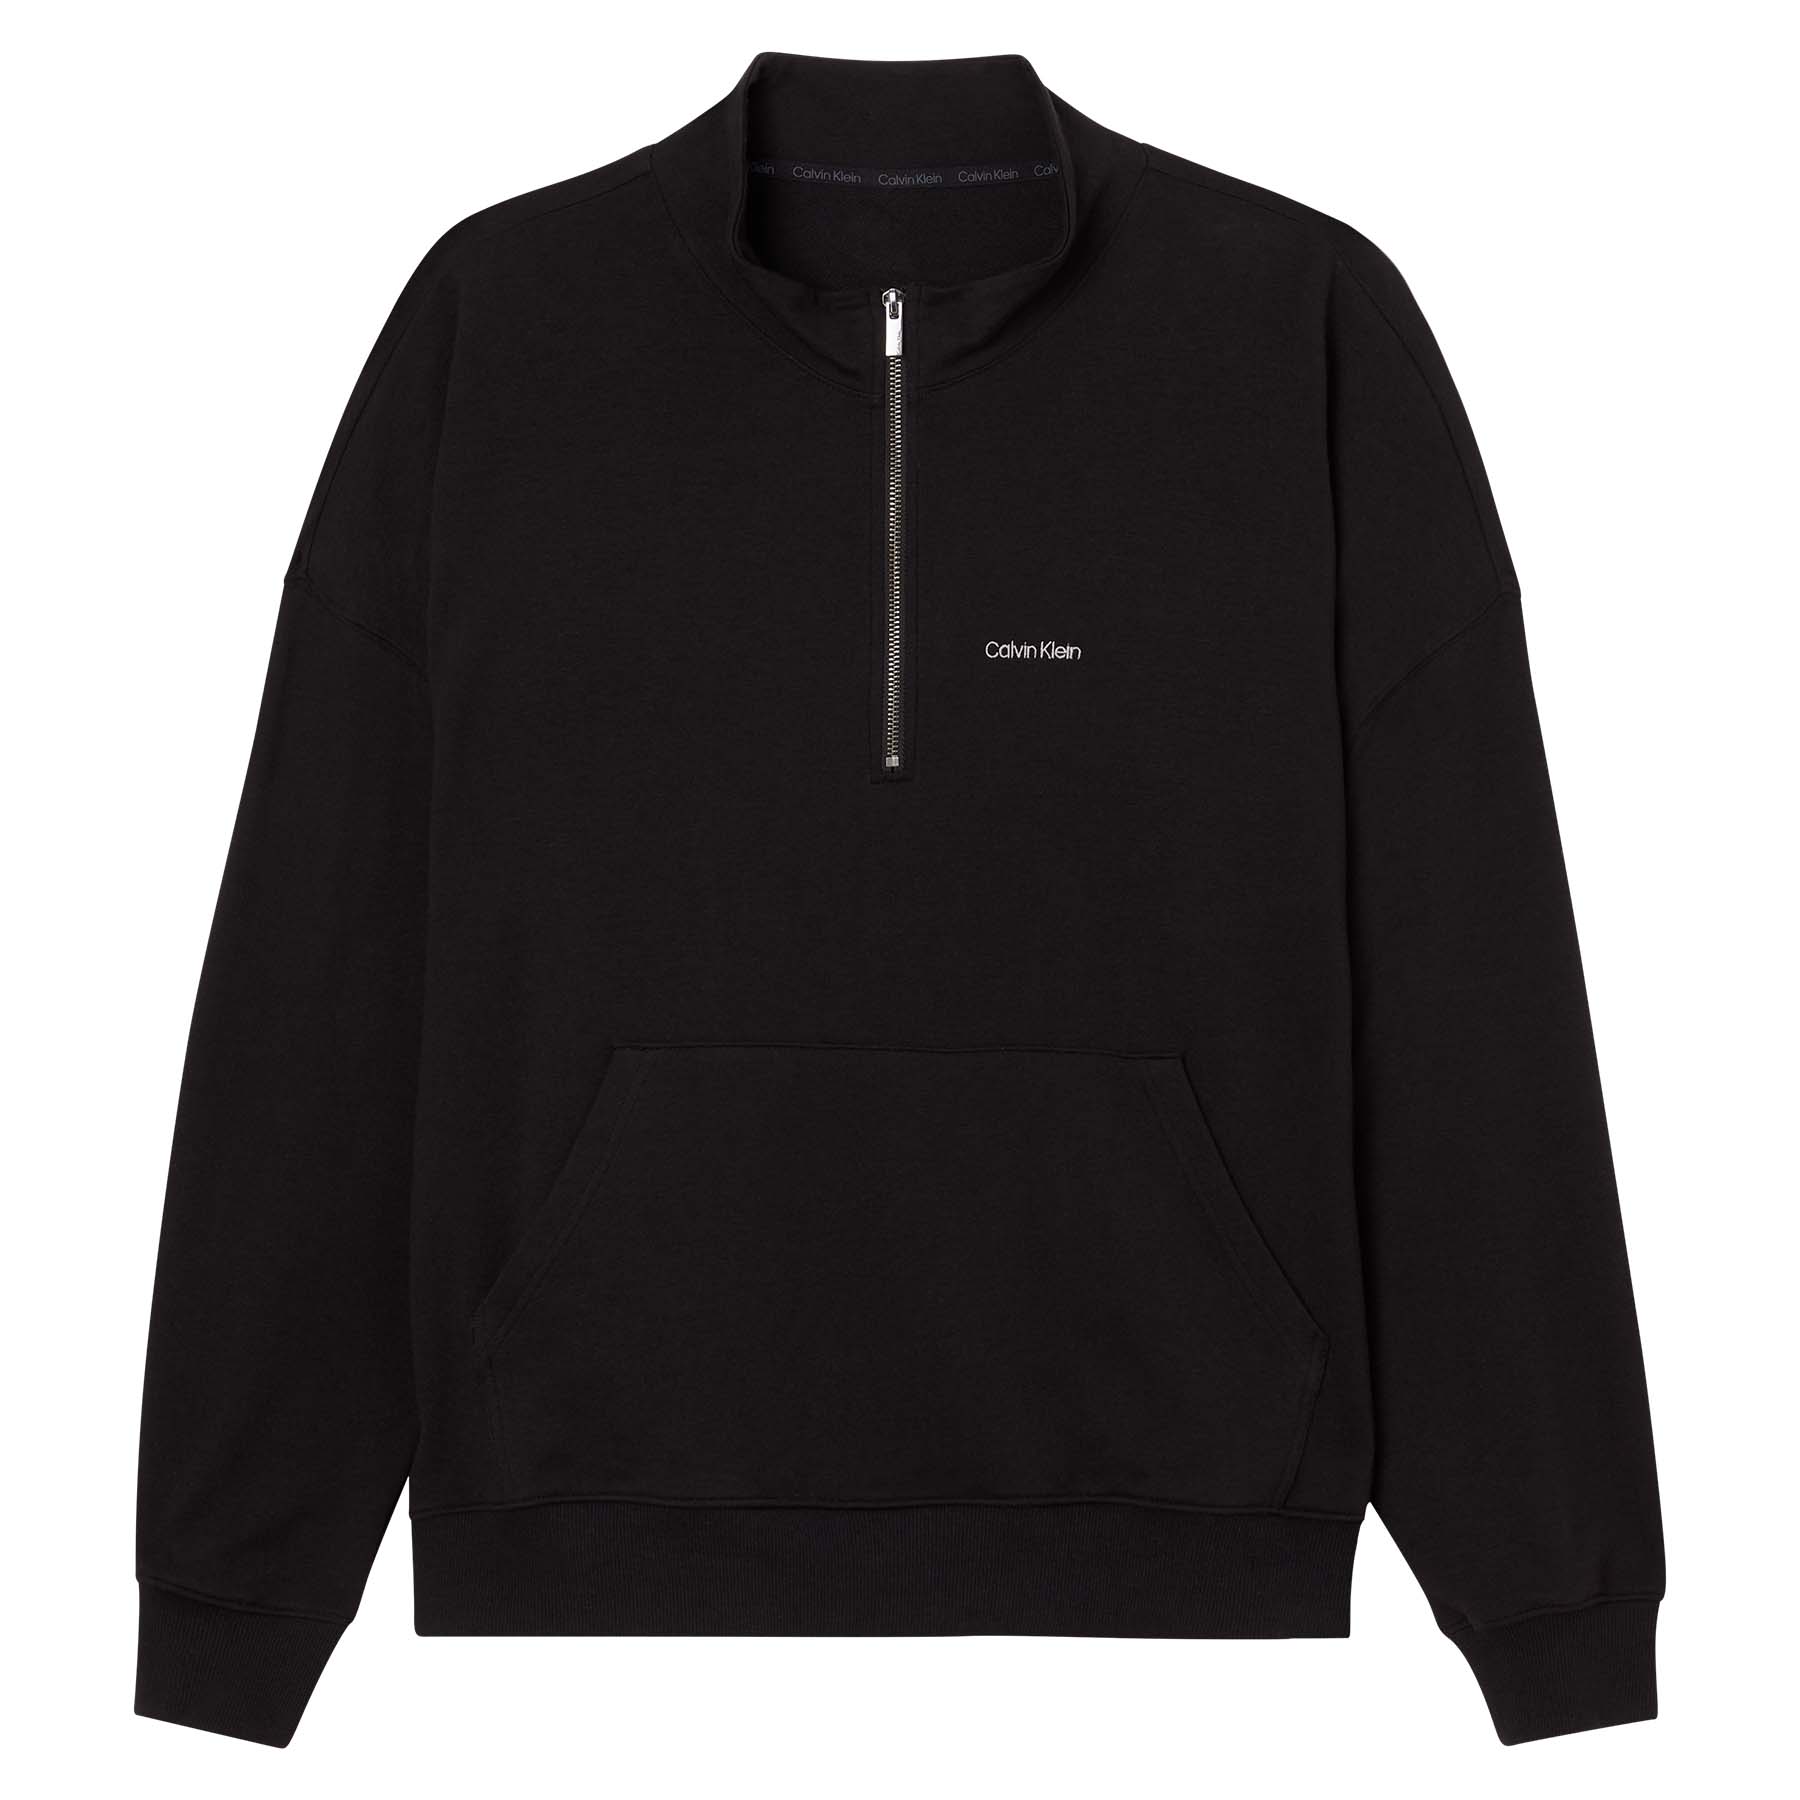 Calvin Klein - L/s quarter zip - Sweatshirts og trøjer til herre - Sort - XL